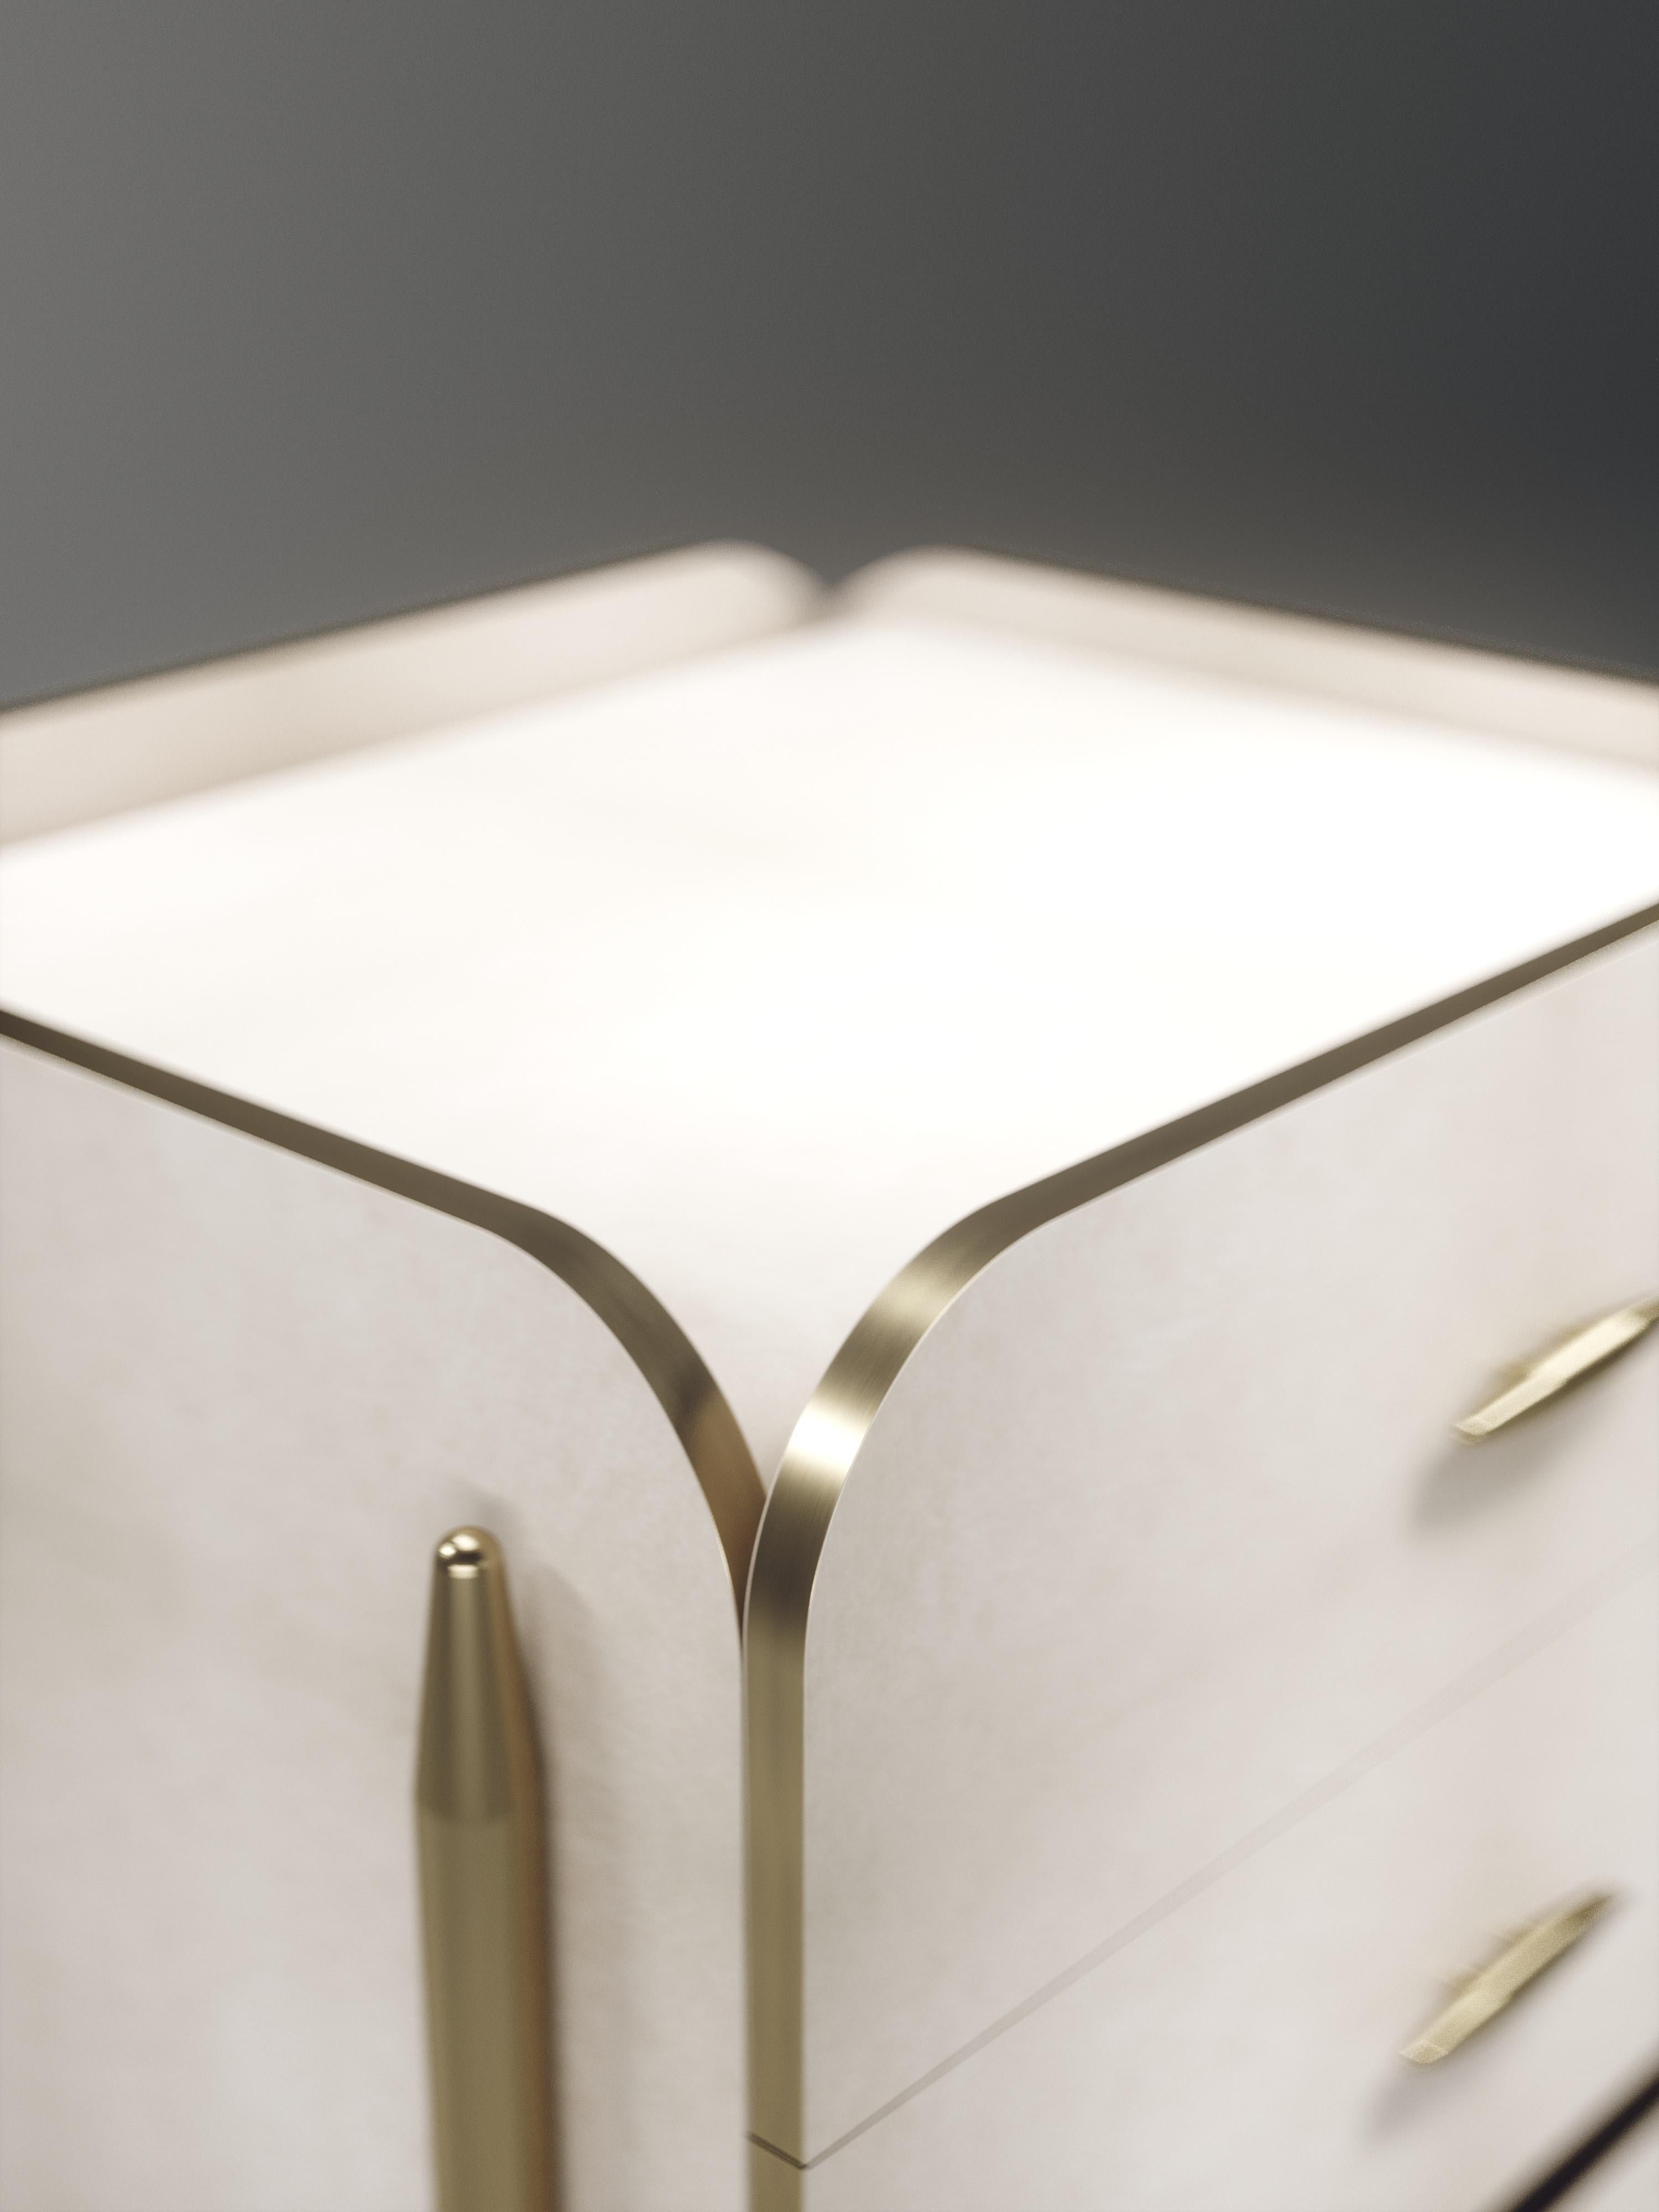 La table de chevet carrée Dandy de Kifu Paris est un accent élégant et luxueux pour la maison, incrustée en parchemin crème avec des détails en laiton bronze-patiné. Cette pièce comprend 3 tiroirs au total et les intérieurs sont incrustés en placage